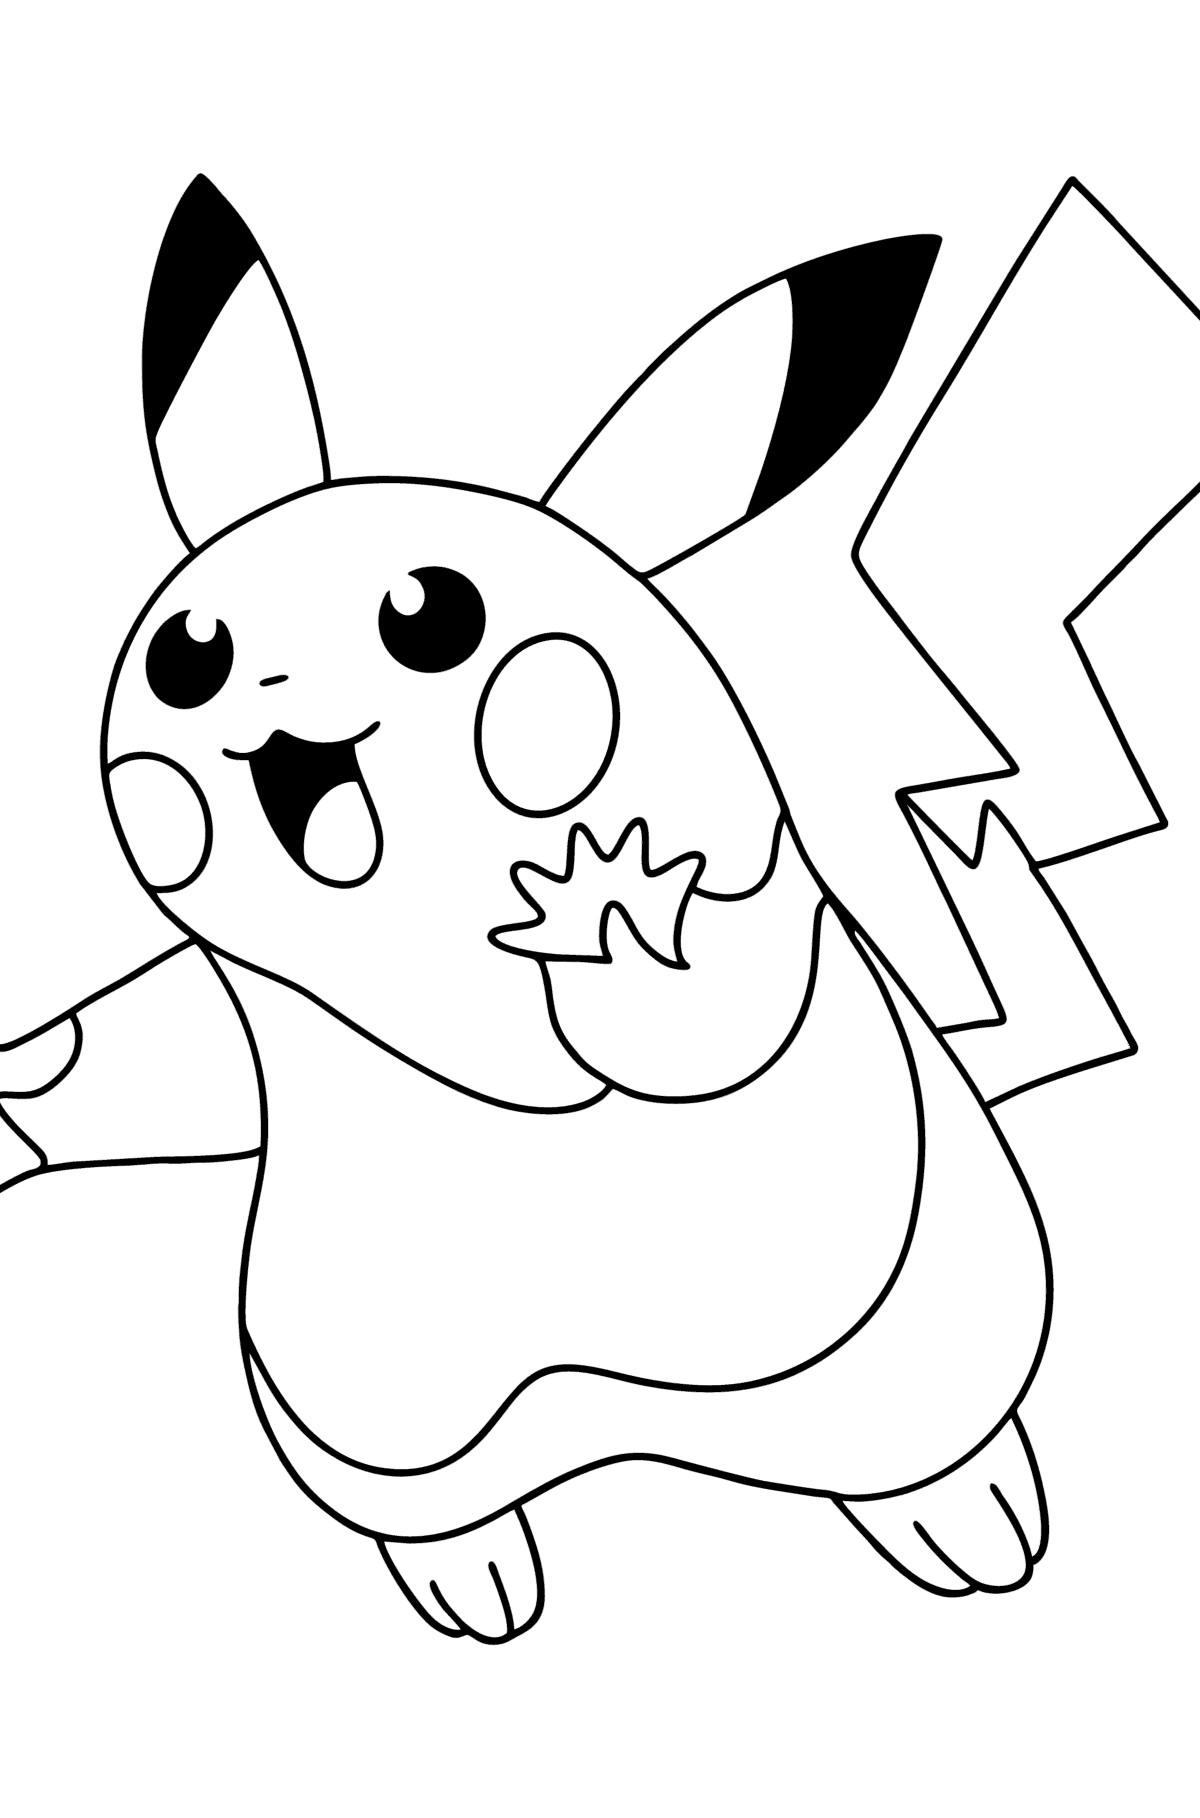 Tegning til fargelegging Pokémon Go Picachu-go - Tegninger til fargelegging for barn